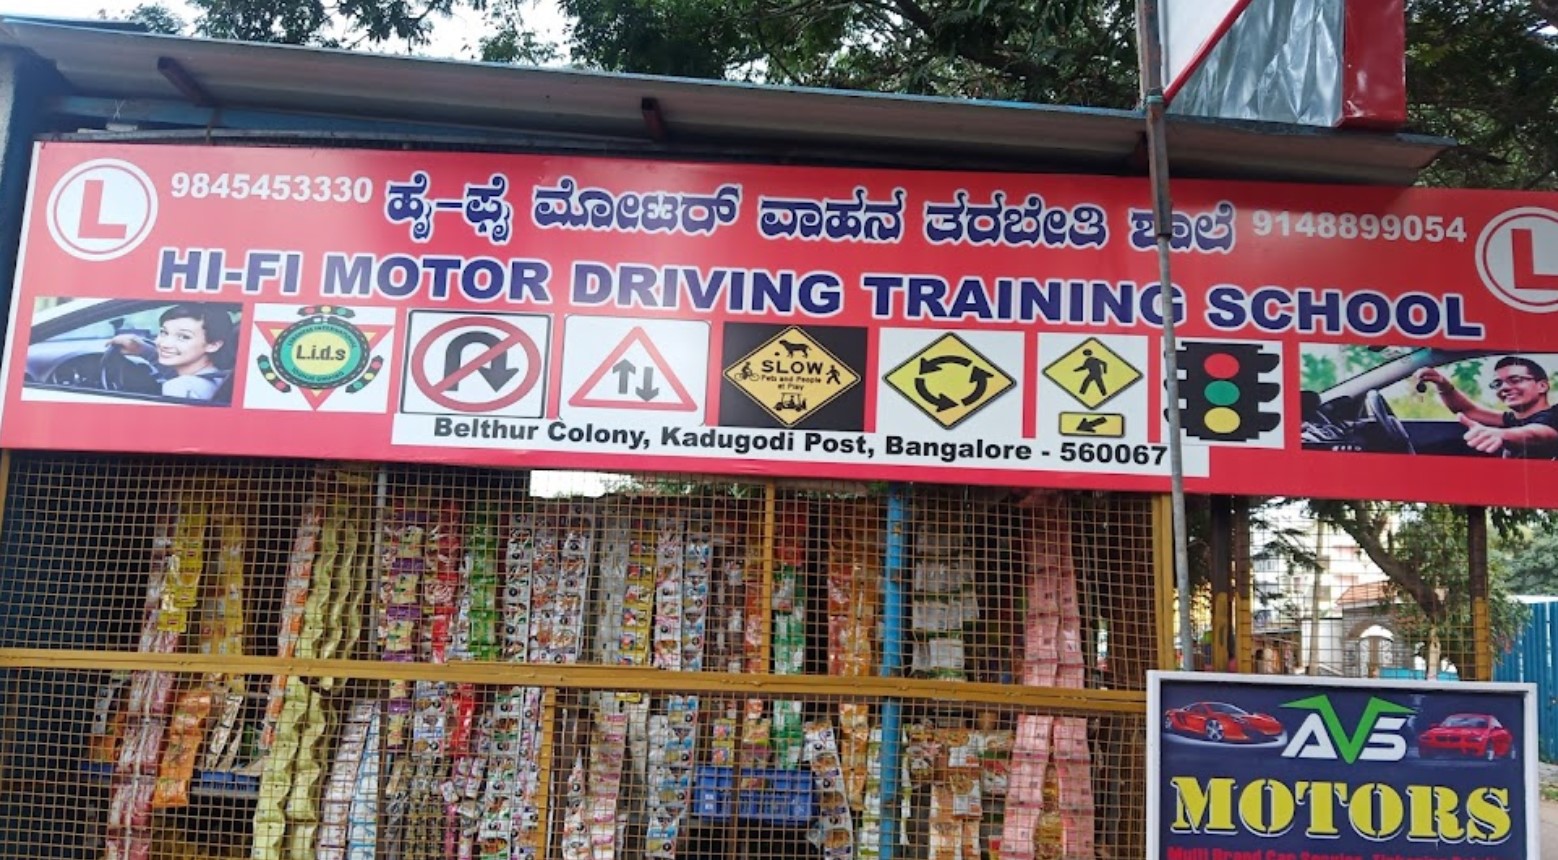 Hi-Fi Motor Driving Training School in Kadugodi